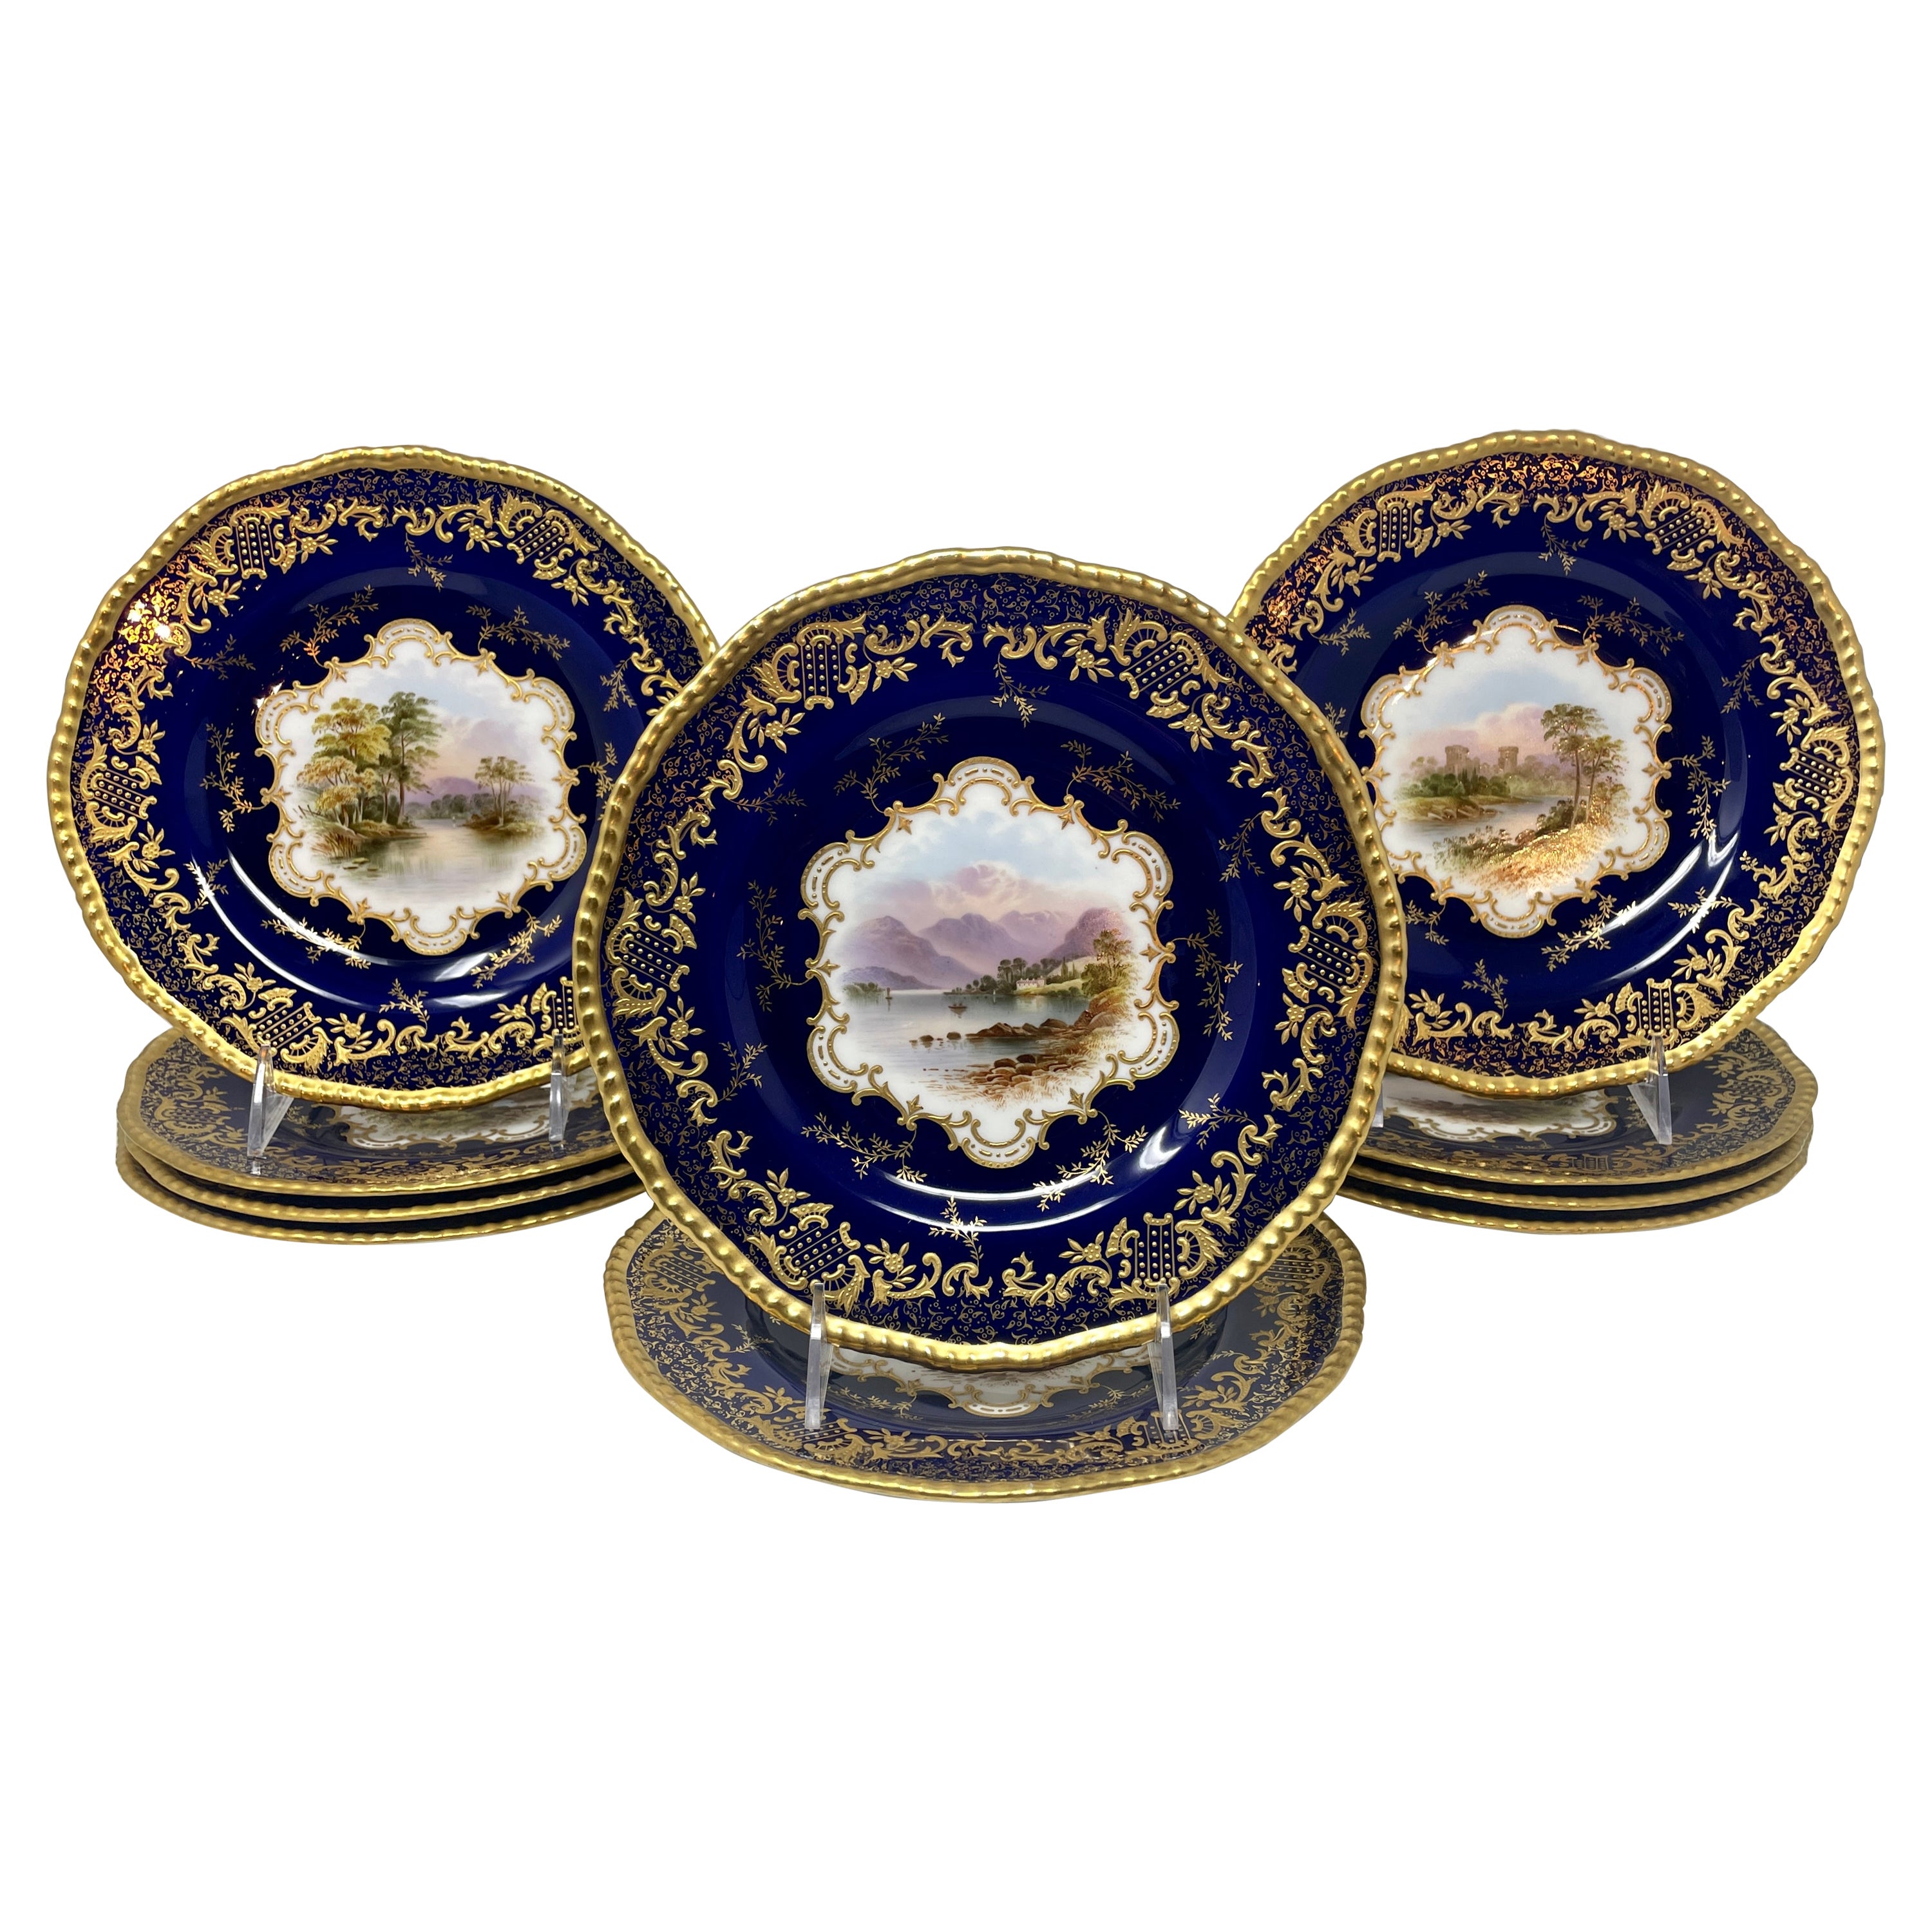 Ensemble de 10 assiettes anglaises anciennes en porcelaine de Coalport bleu cobalt et or, vers 1900.